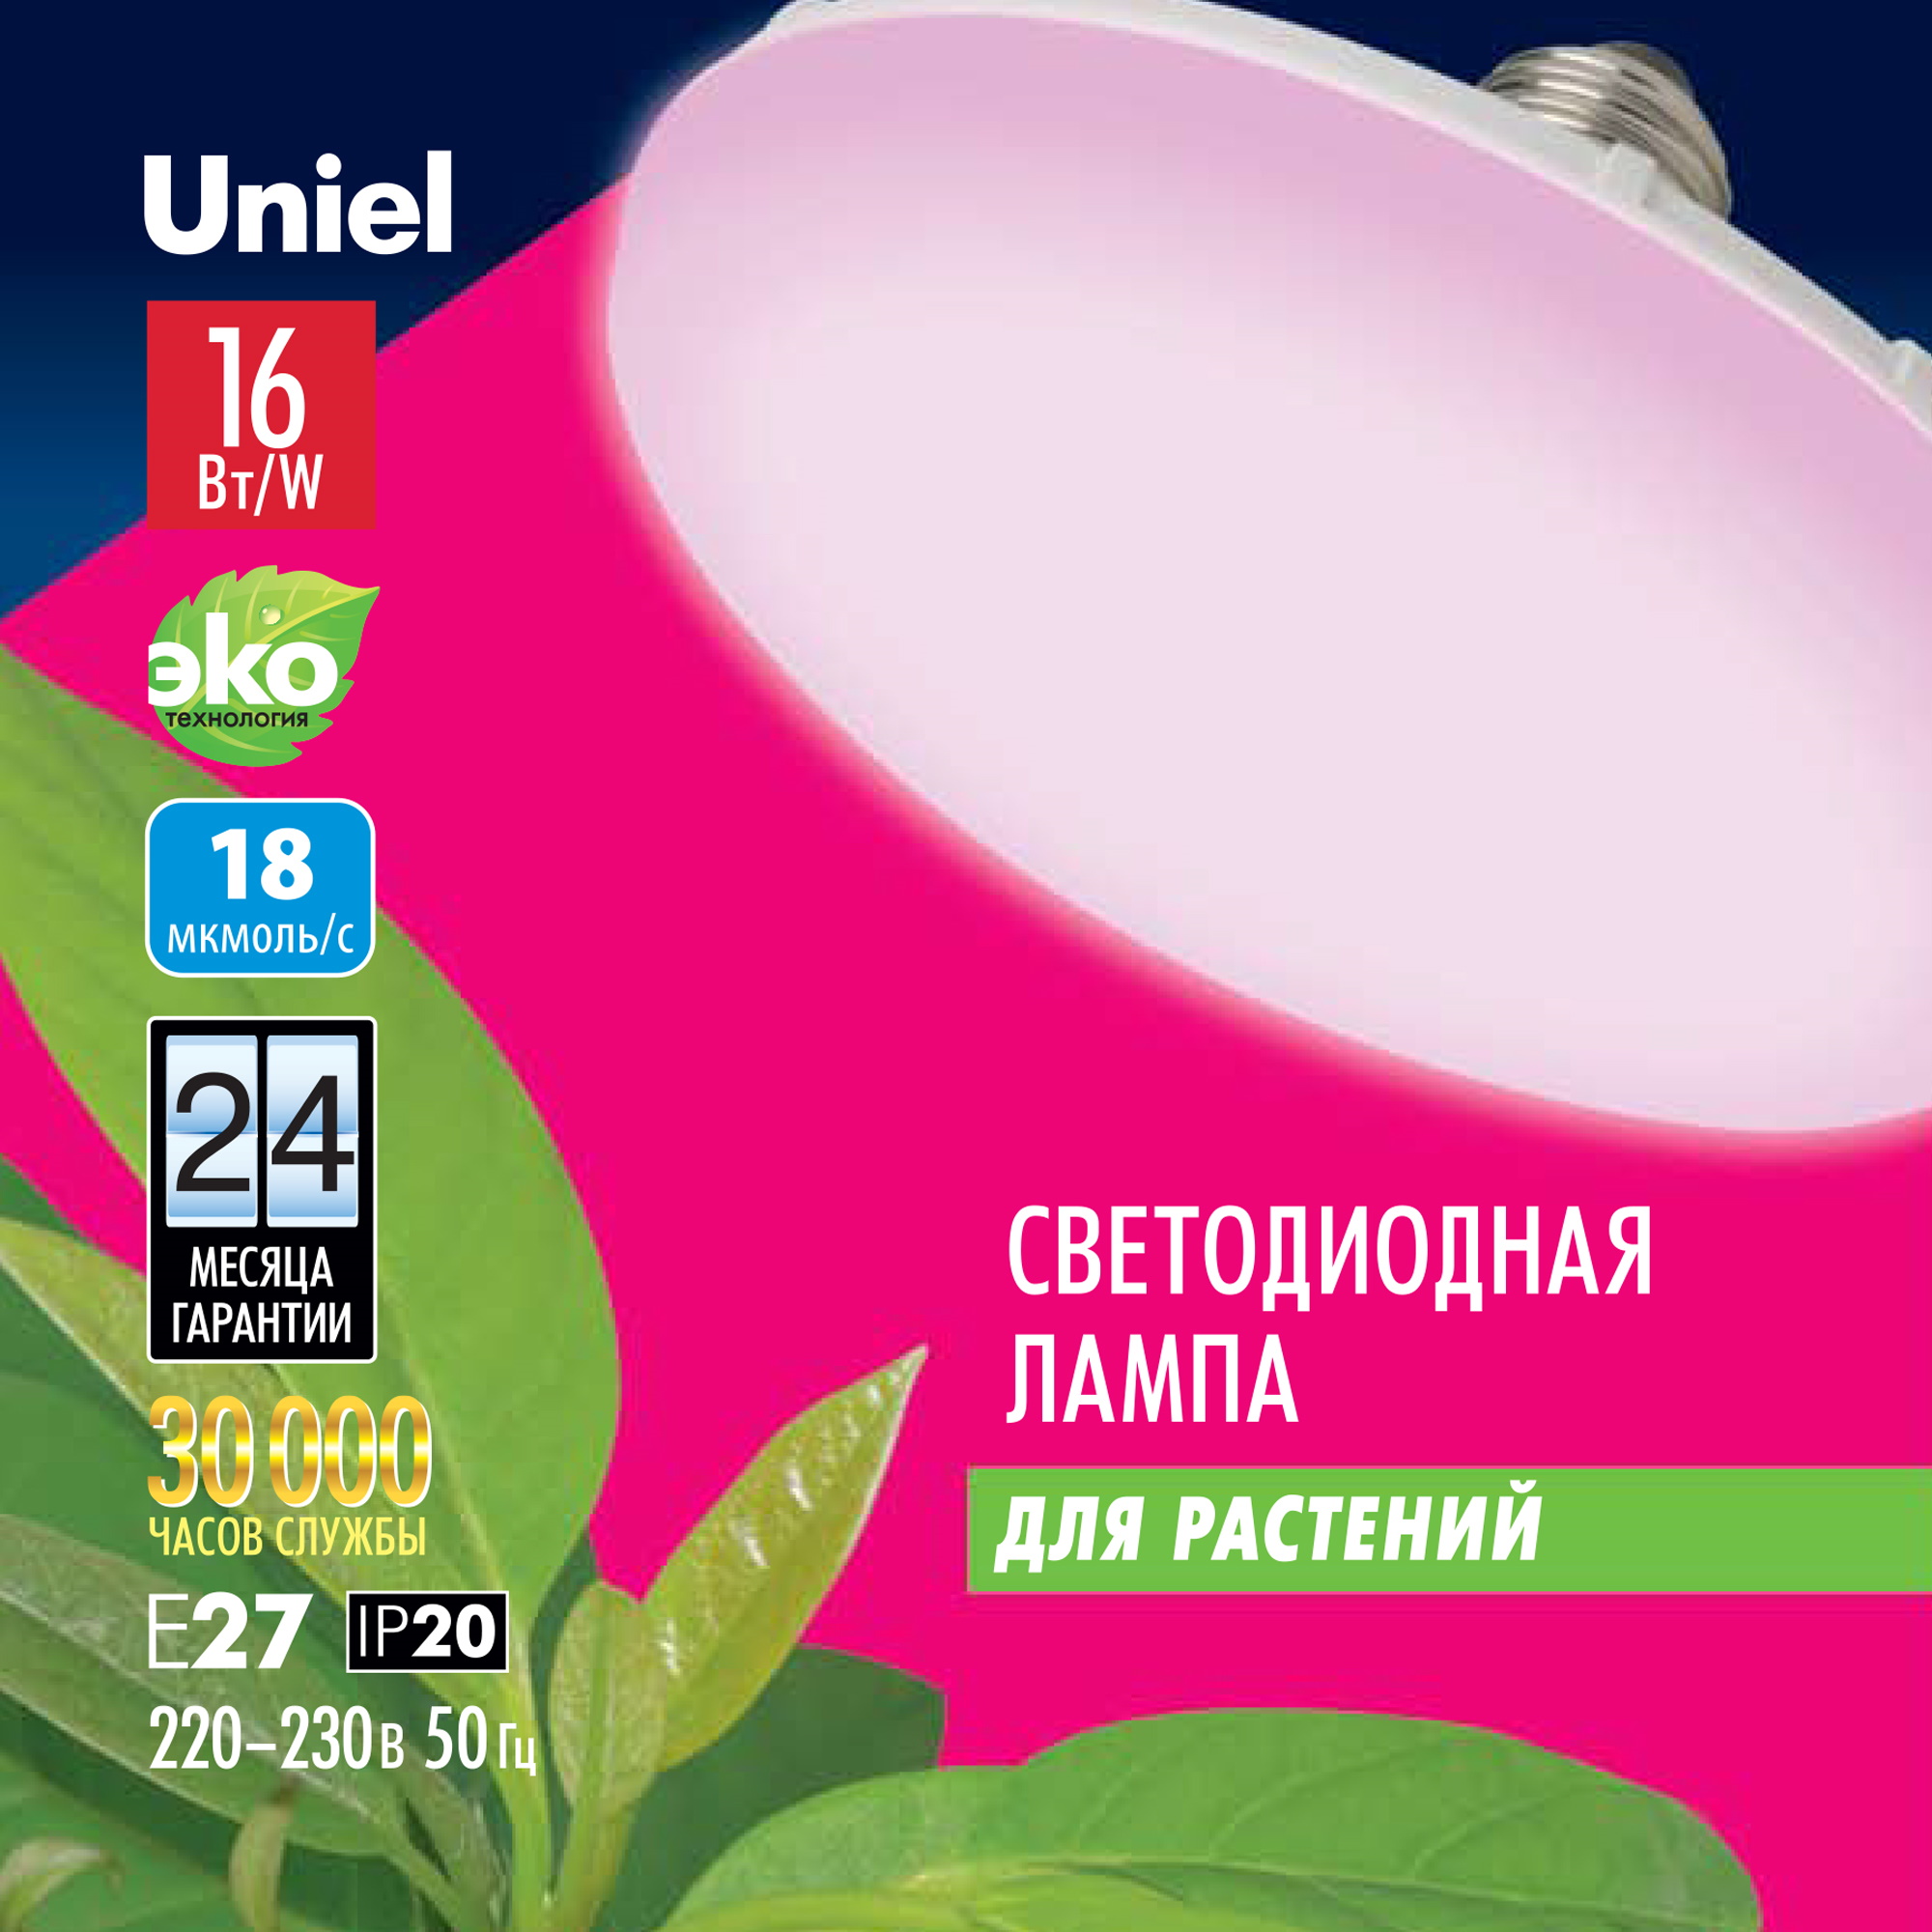 LED-U150-16W-SPSB-E27-FR PLP30WH Лампа светодиодная для растений. Форма UFO. матовая.  Спектр для рассады и цветения. Картон. ТМ Uniel